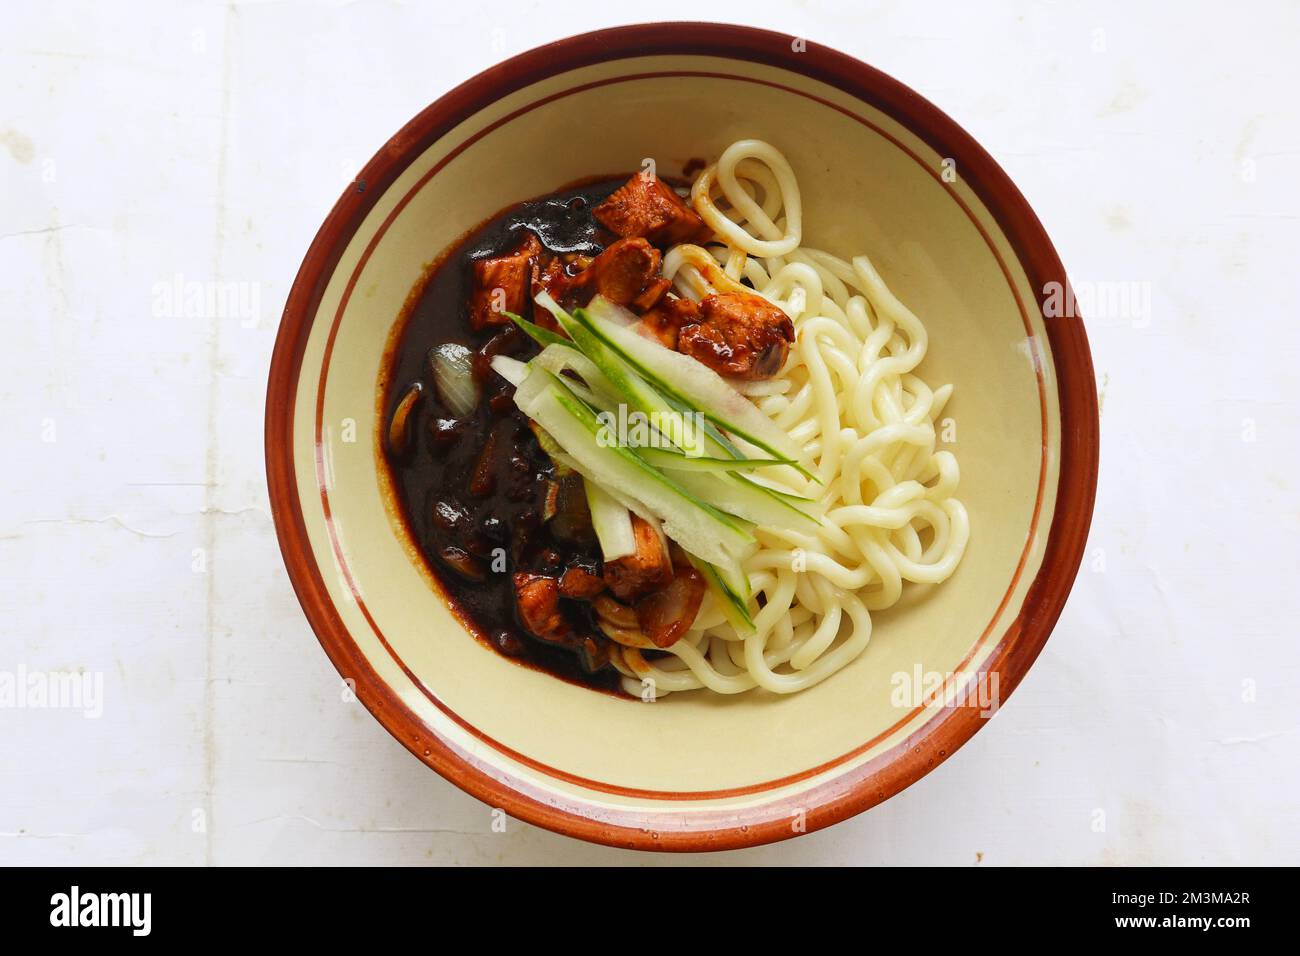 Jajangmyeon ou Jajangmyeon est un nouilles coréennes à la sauce noire - servi sur table Banque D'Images